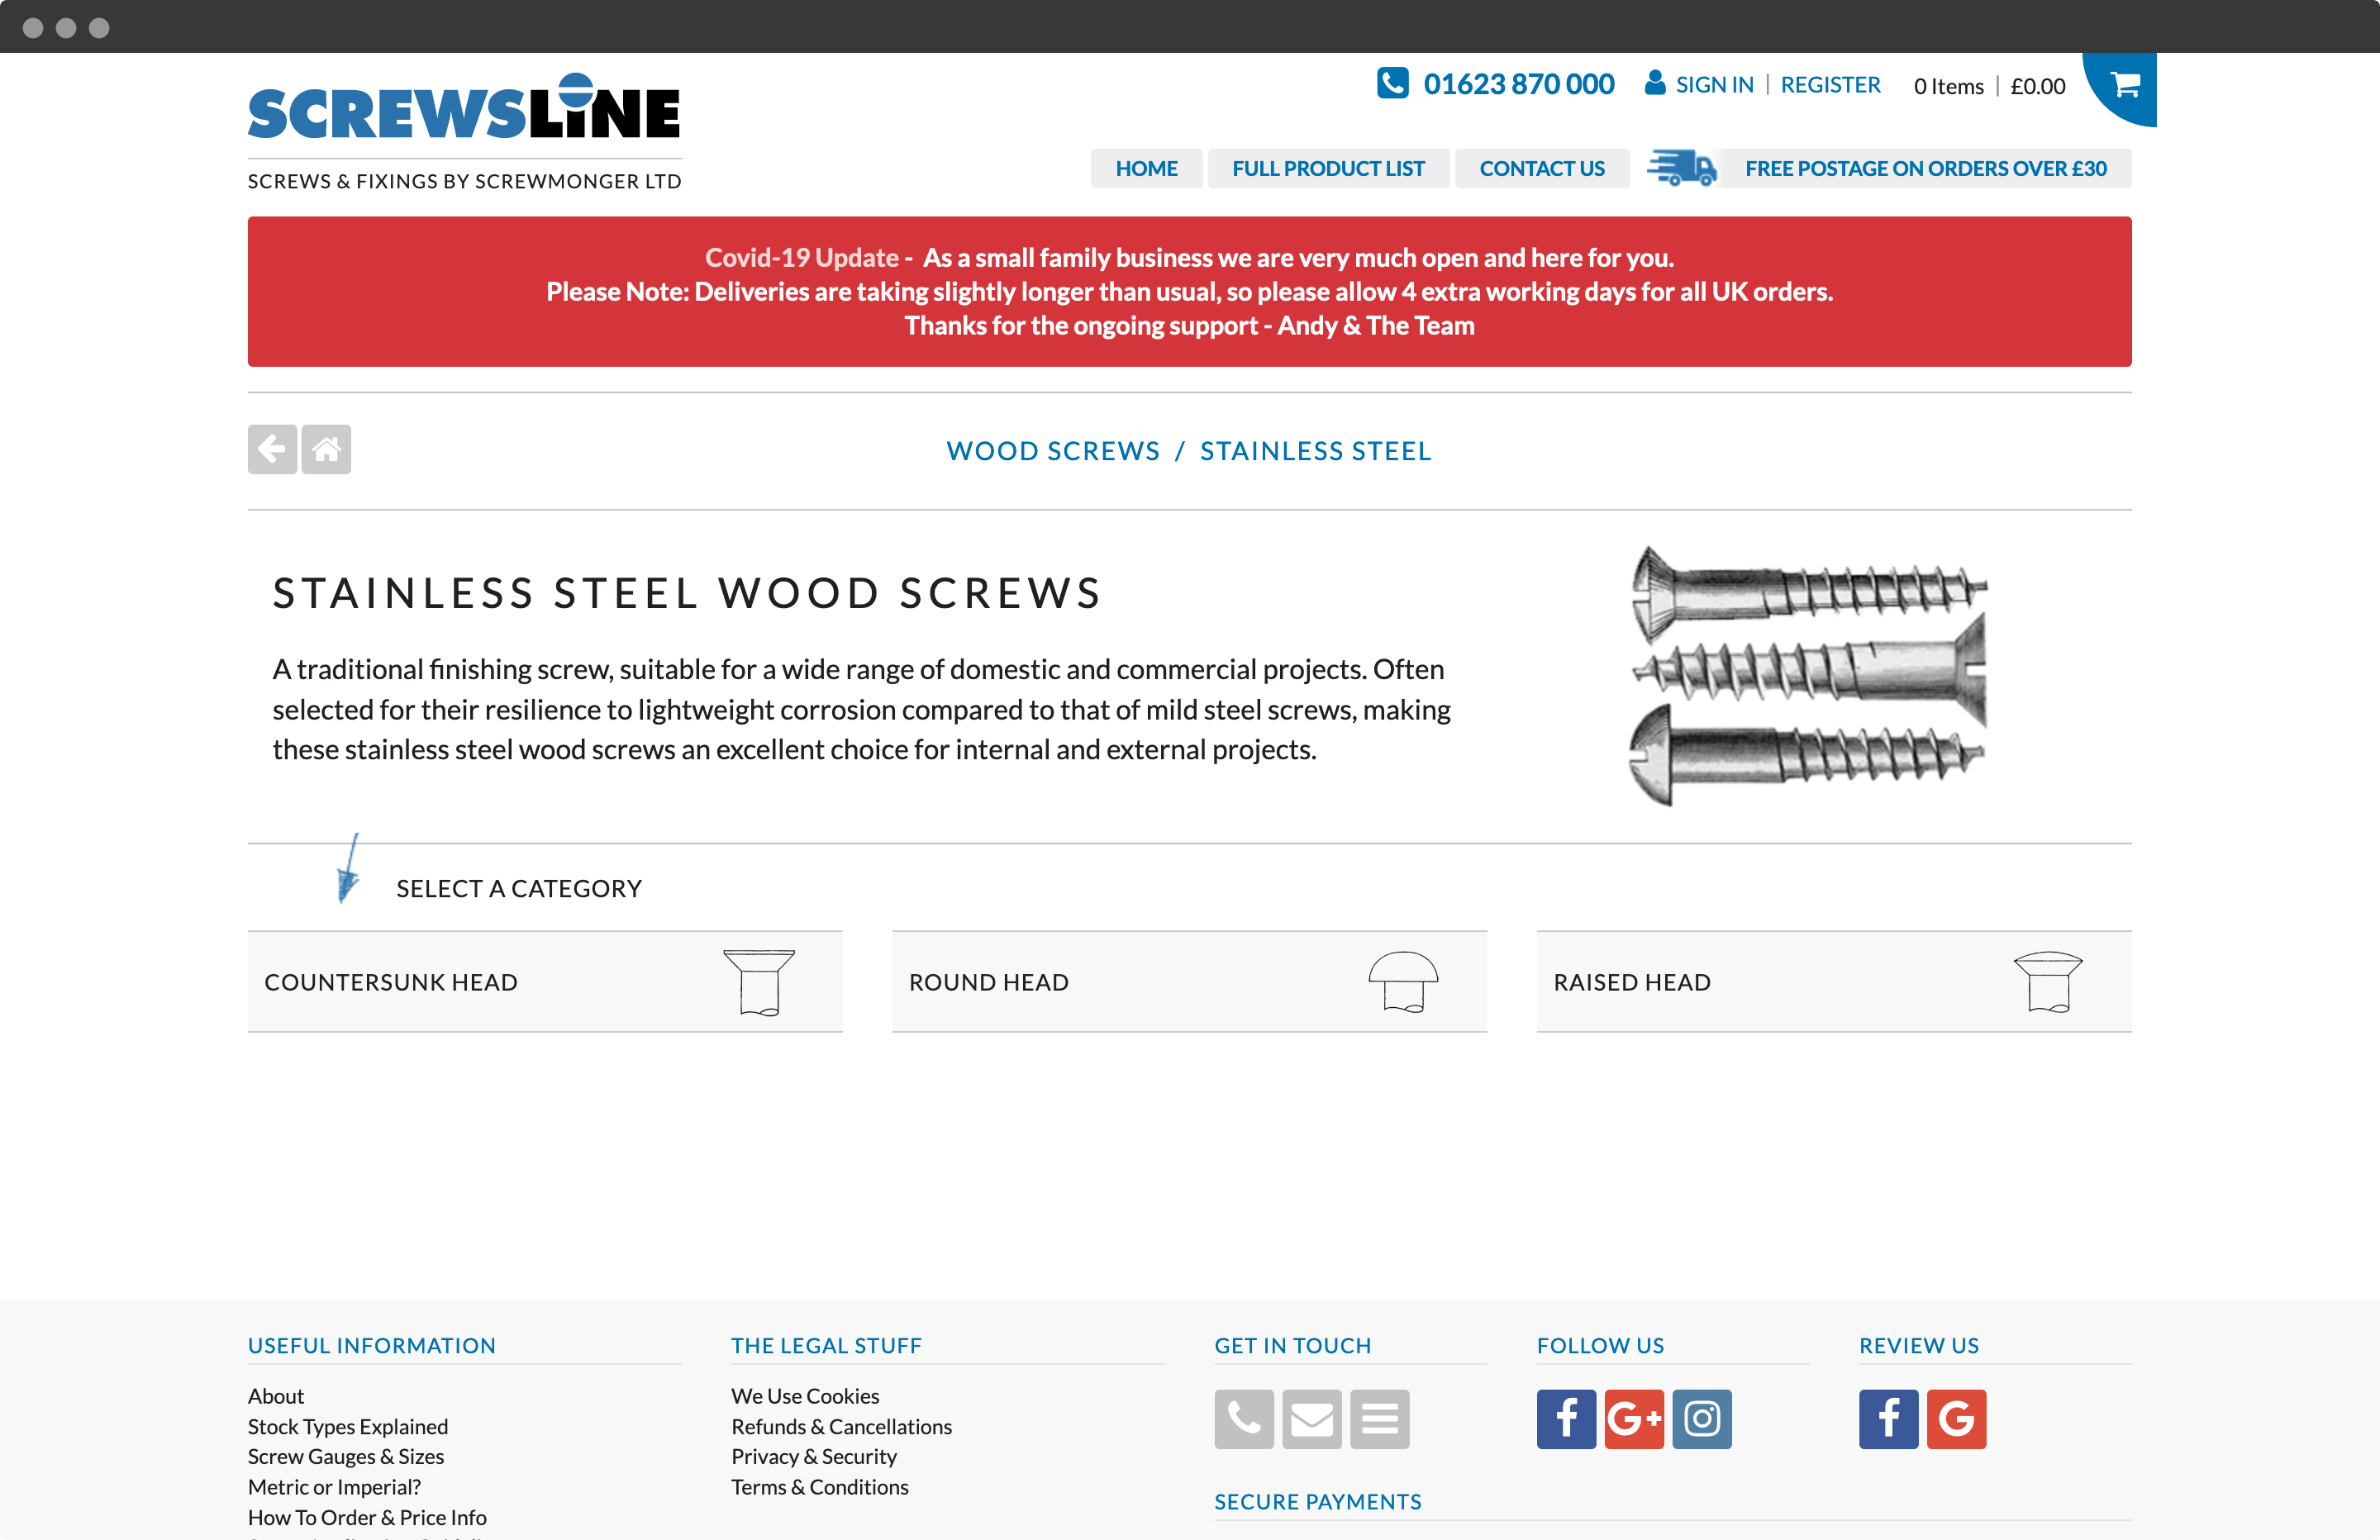 Screwsline screws